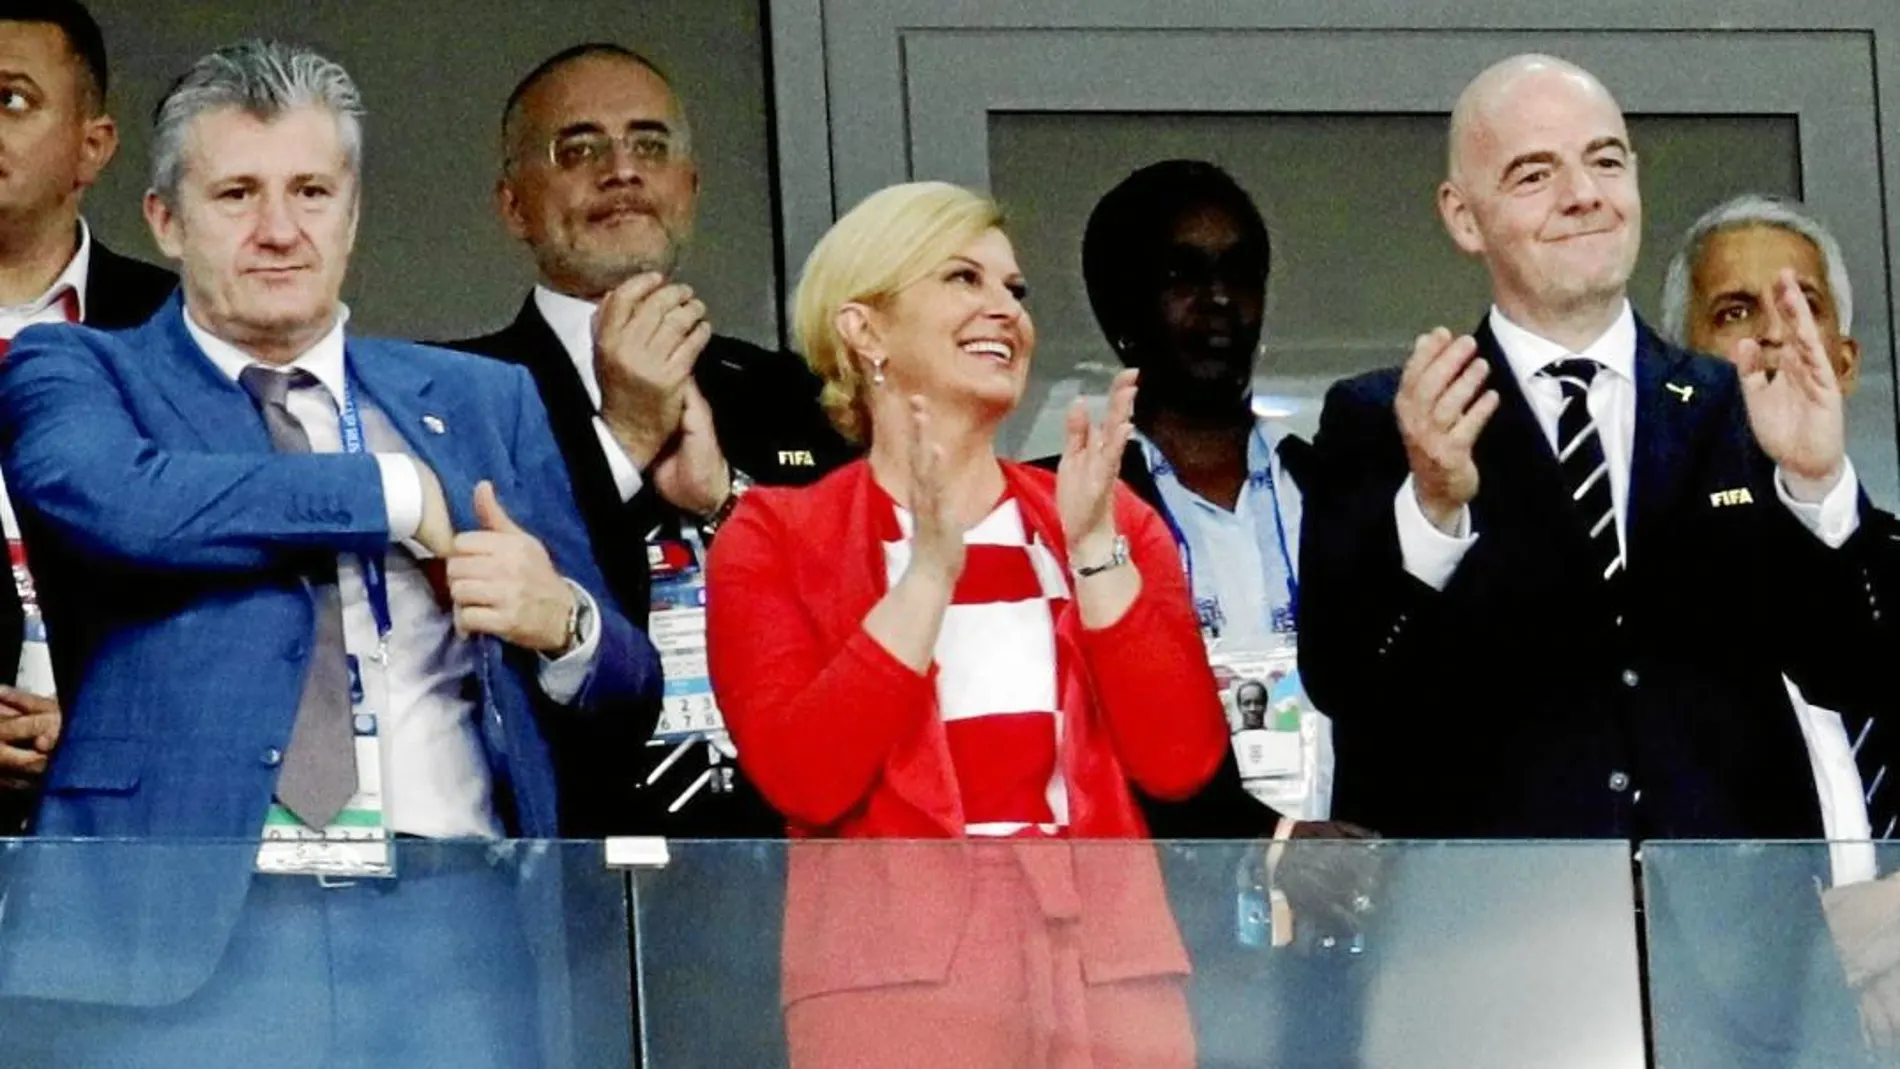 La presidenta de Croacia estará hoy en el palco del estadio Luzhniki para apoyar a su selección. Es una de las imágenes del Mundial / Efe